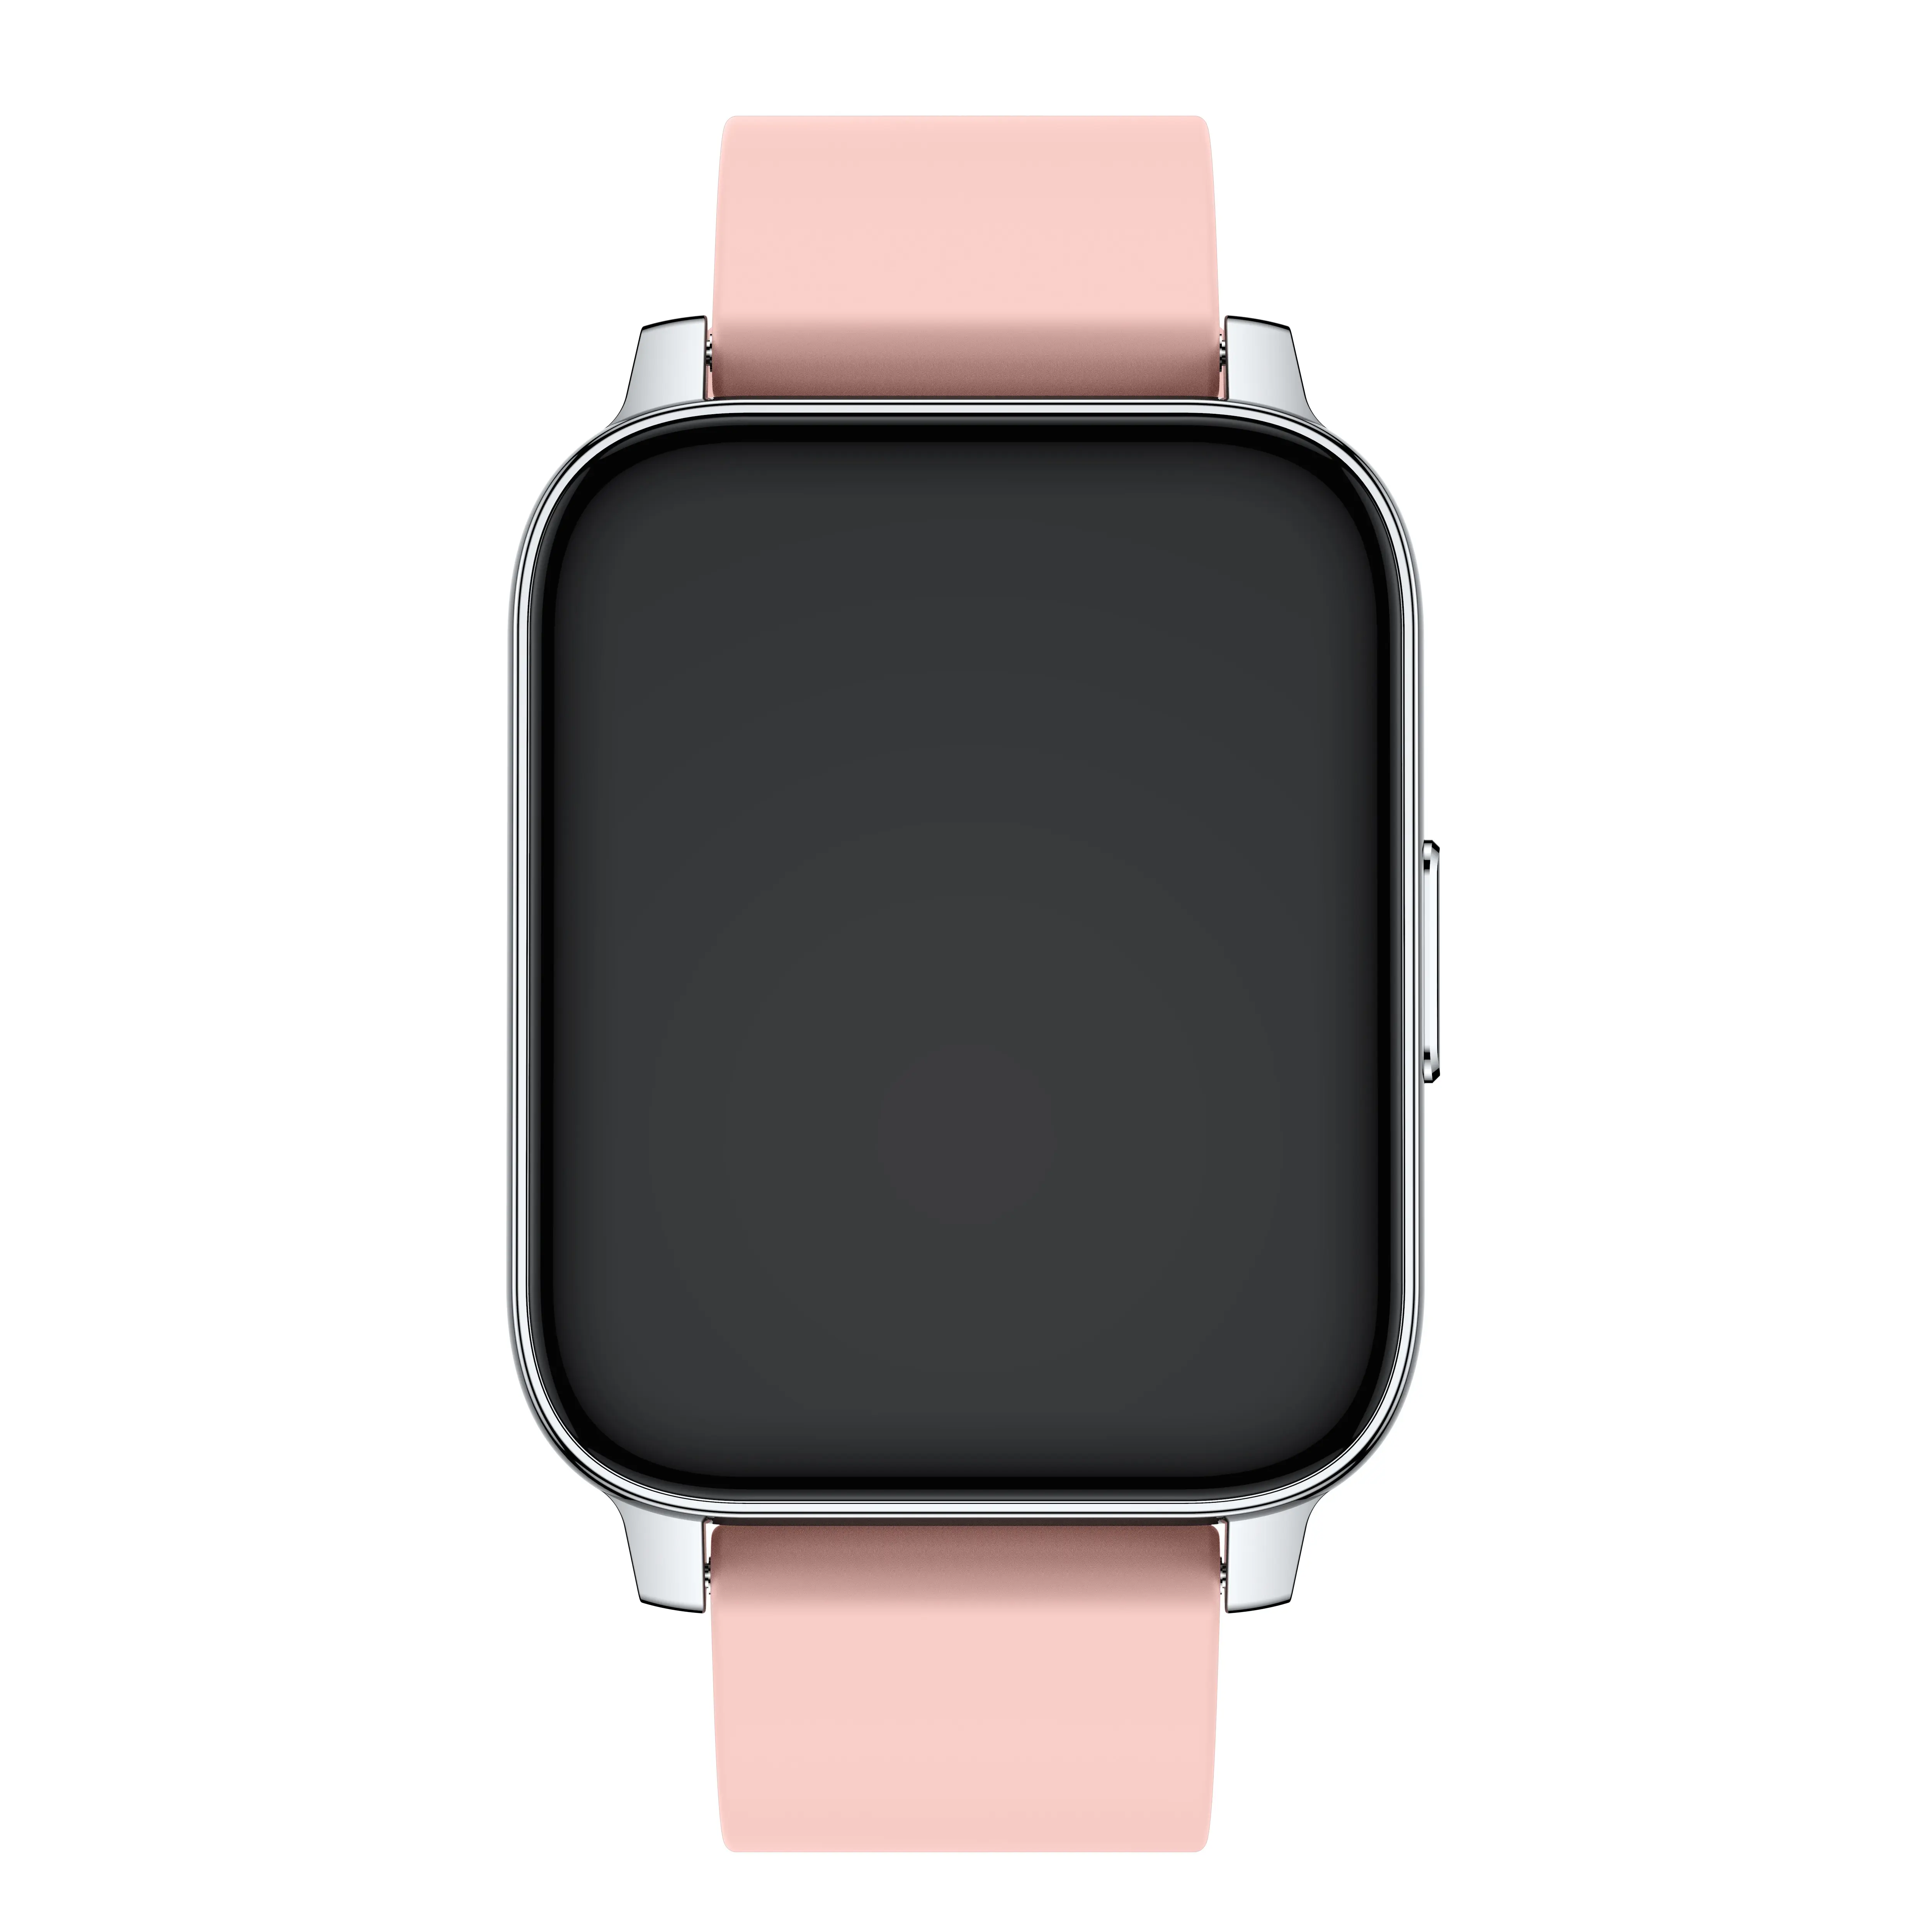 Мульти-функциональный цельный Fitbit умные часы браслет температурный ридер Спорт Здоровье сна монитор